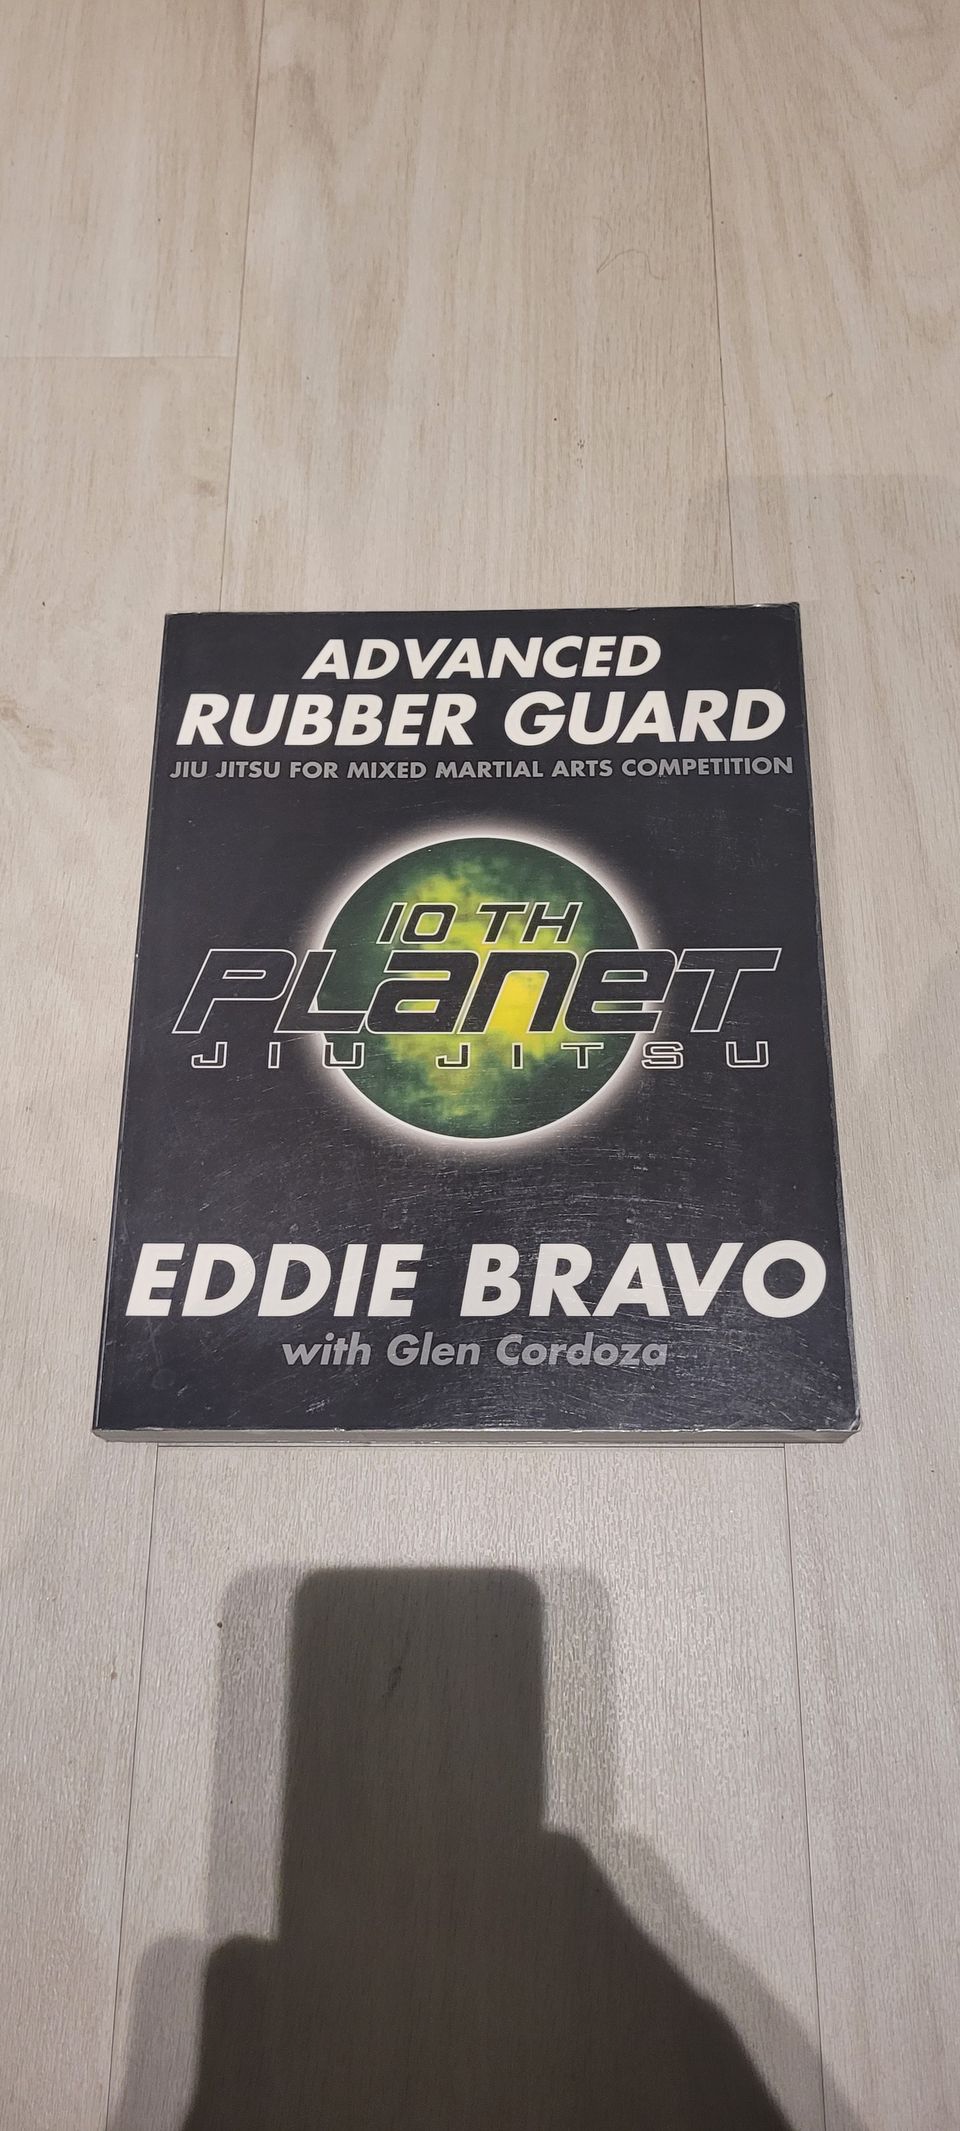 Advanced rubber guard -Eddie Bravo